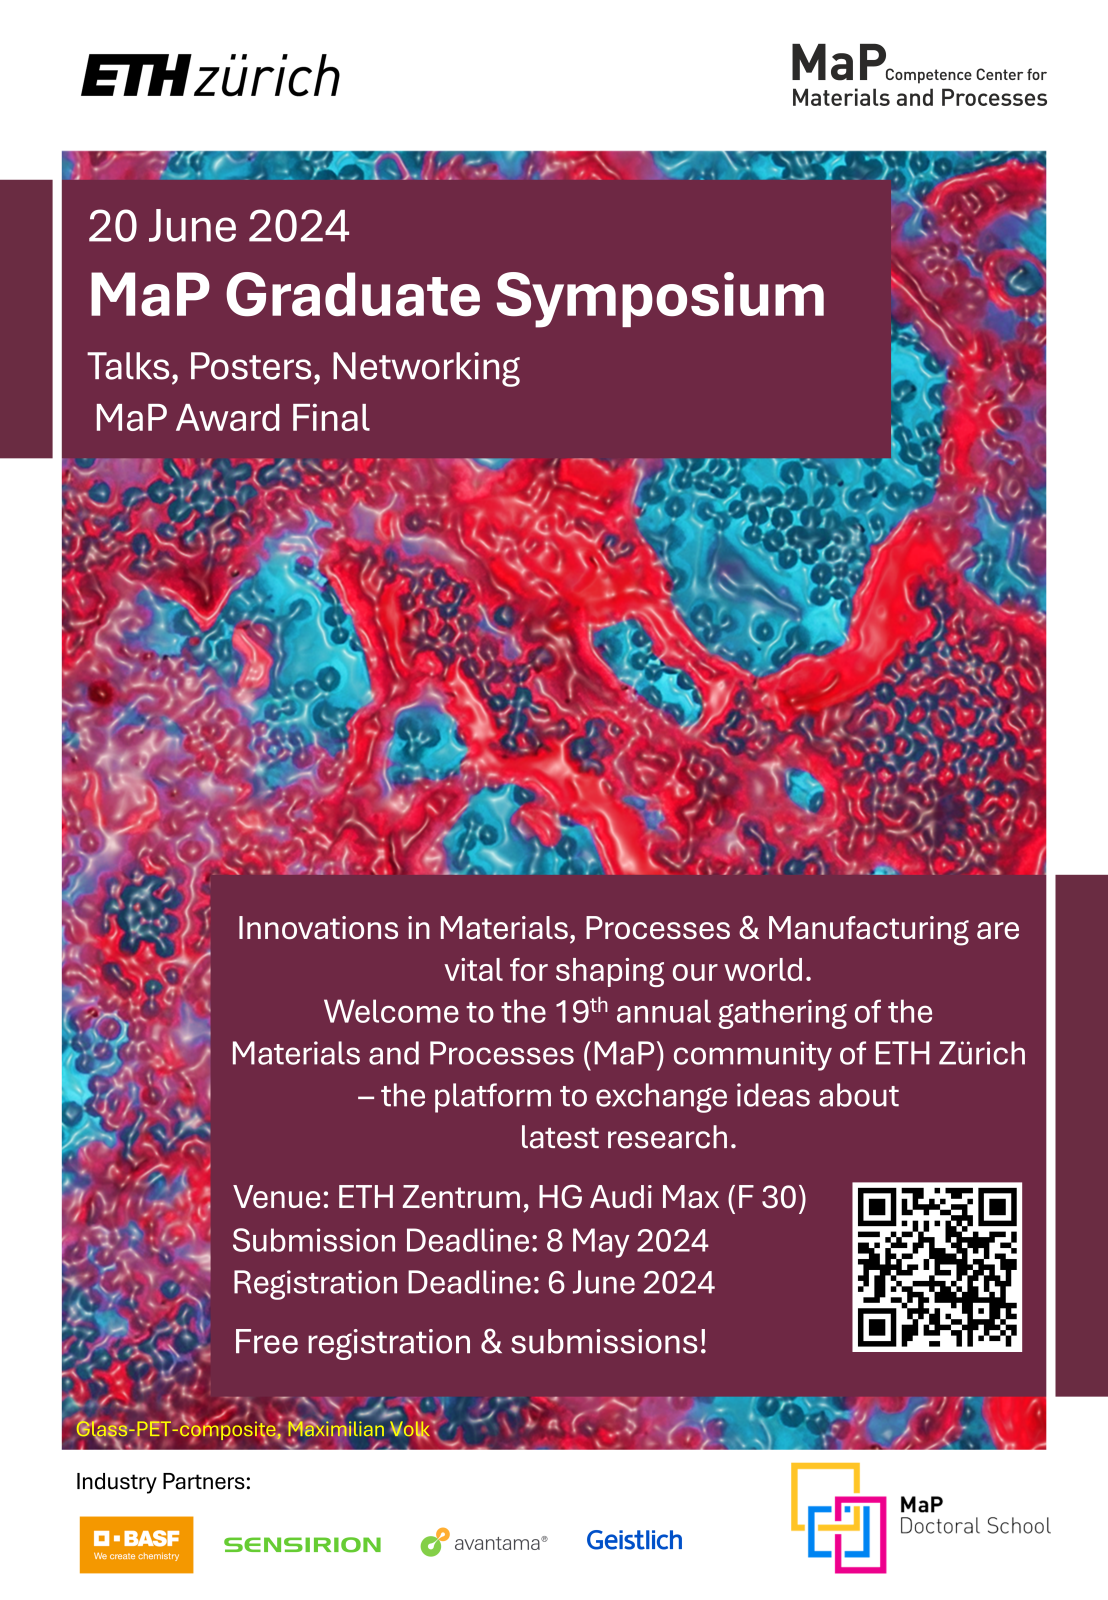 MaP Graduate Symposium announcement poster